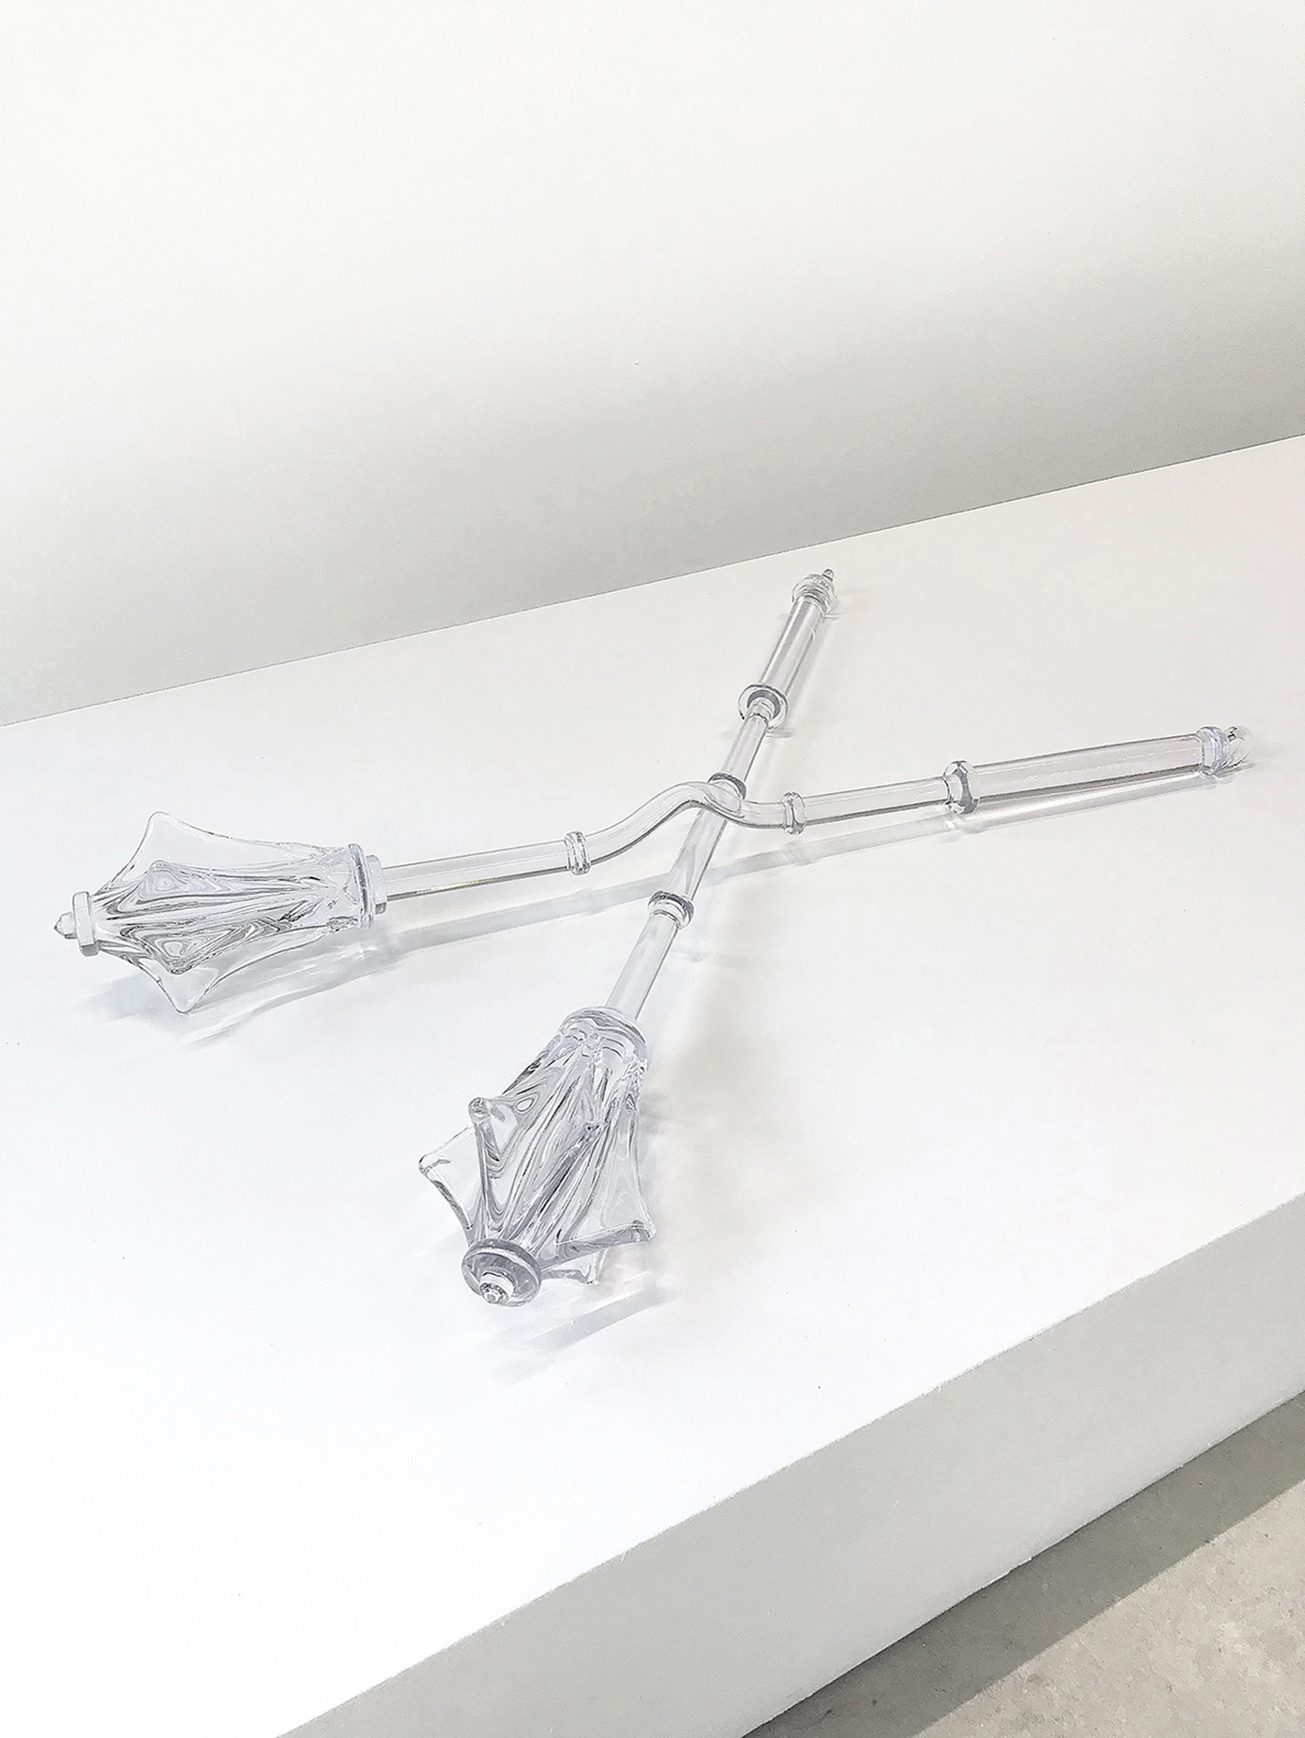 Floryan Varennes, Ensemble Amour Toujours, 2018-2022 medieval glass weapons, 120 x 120 cm.